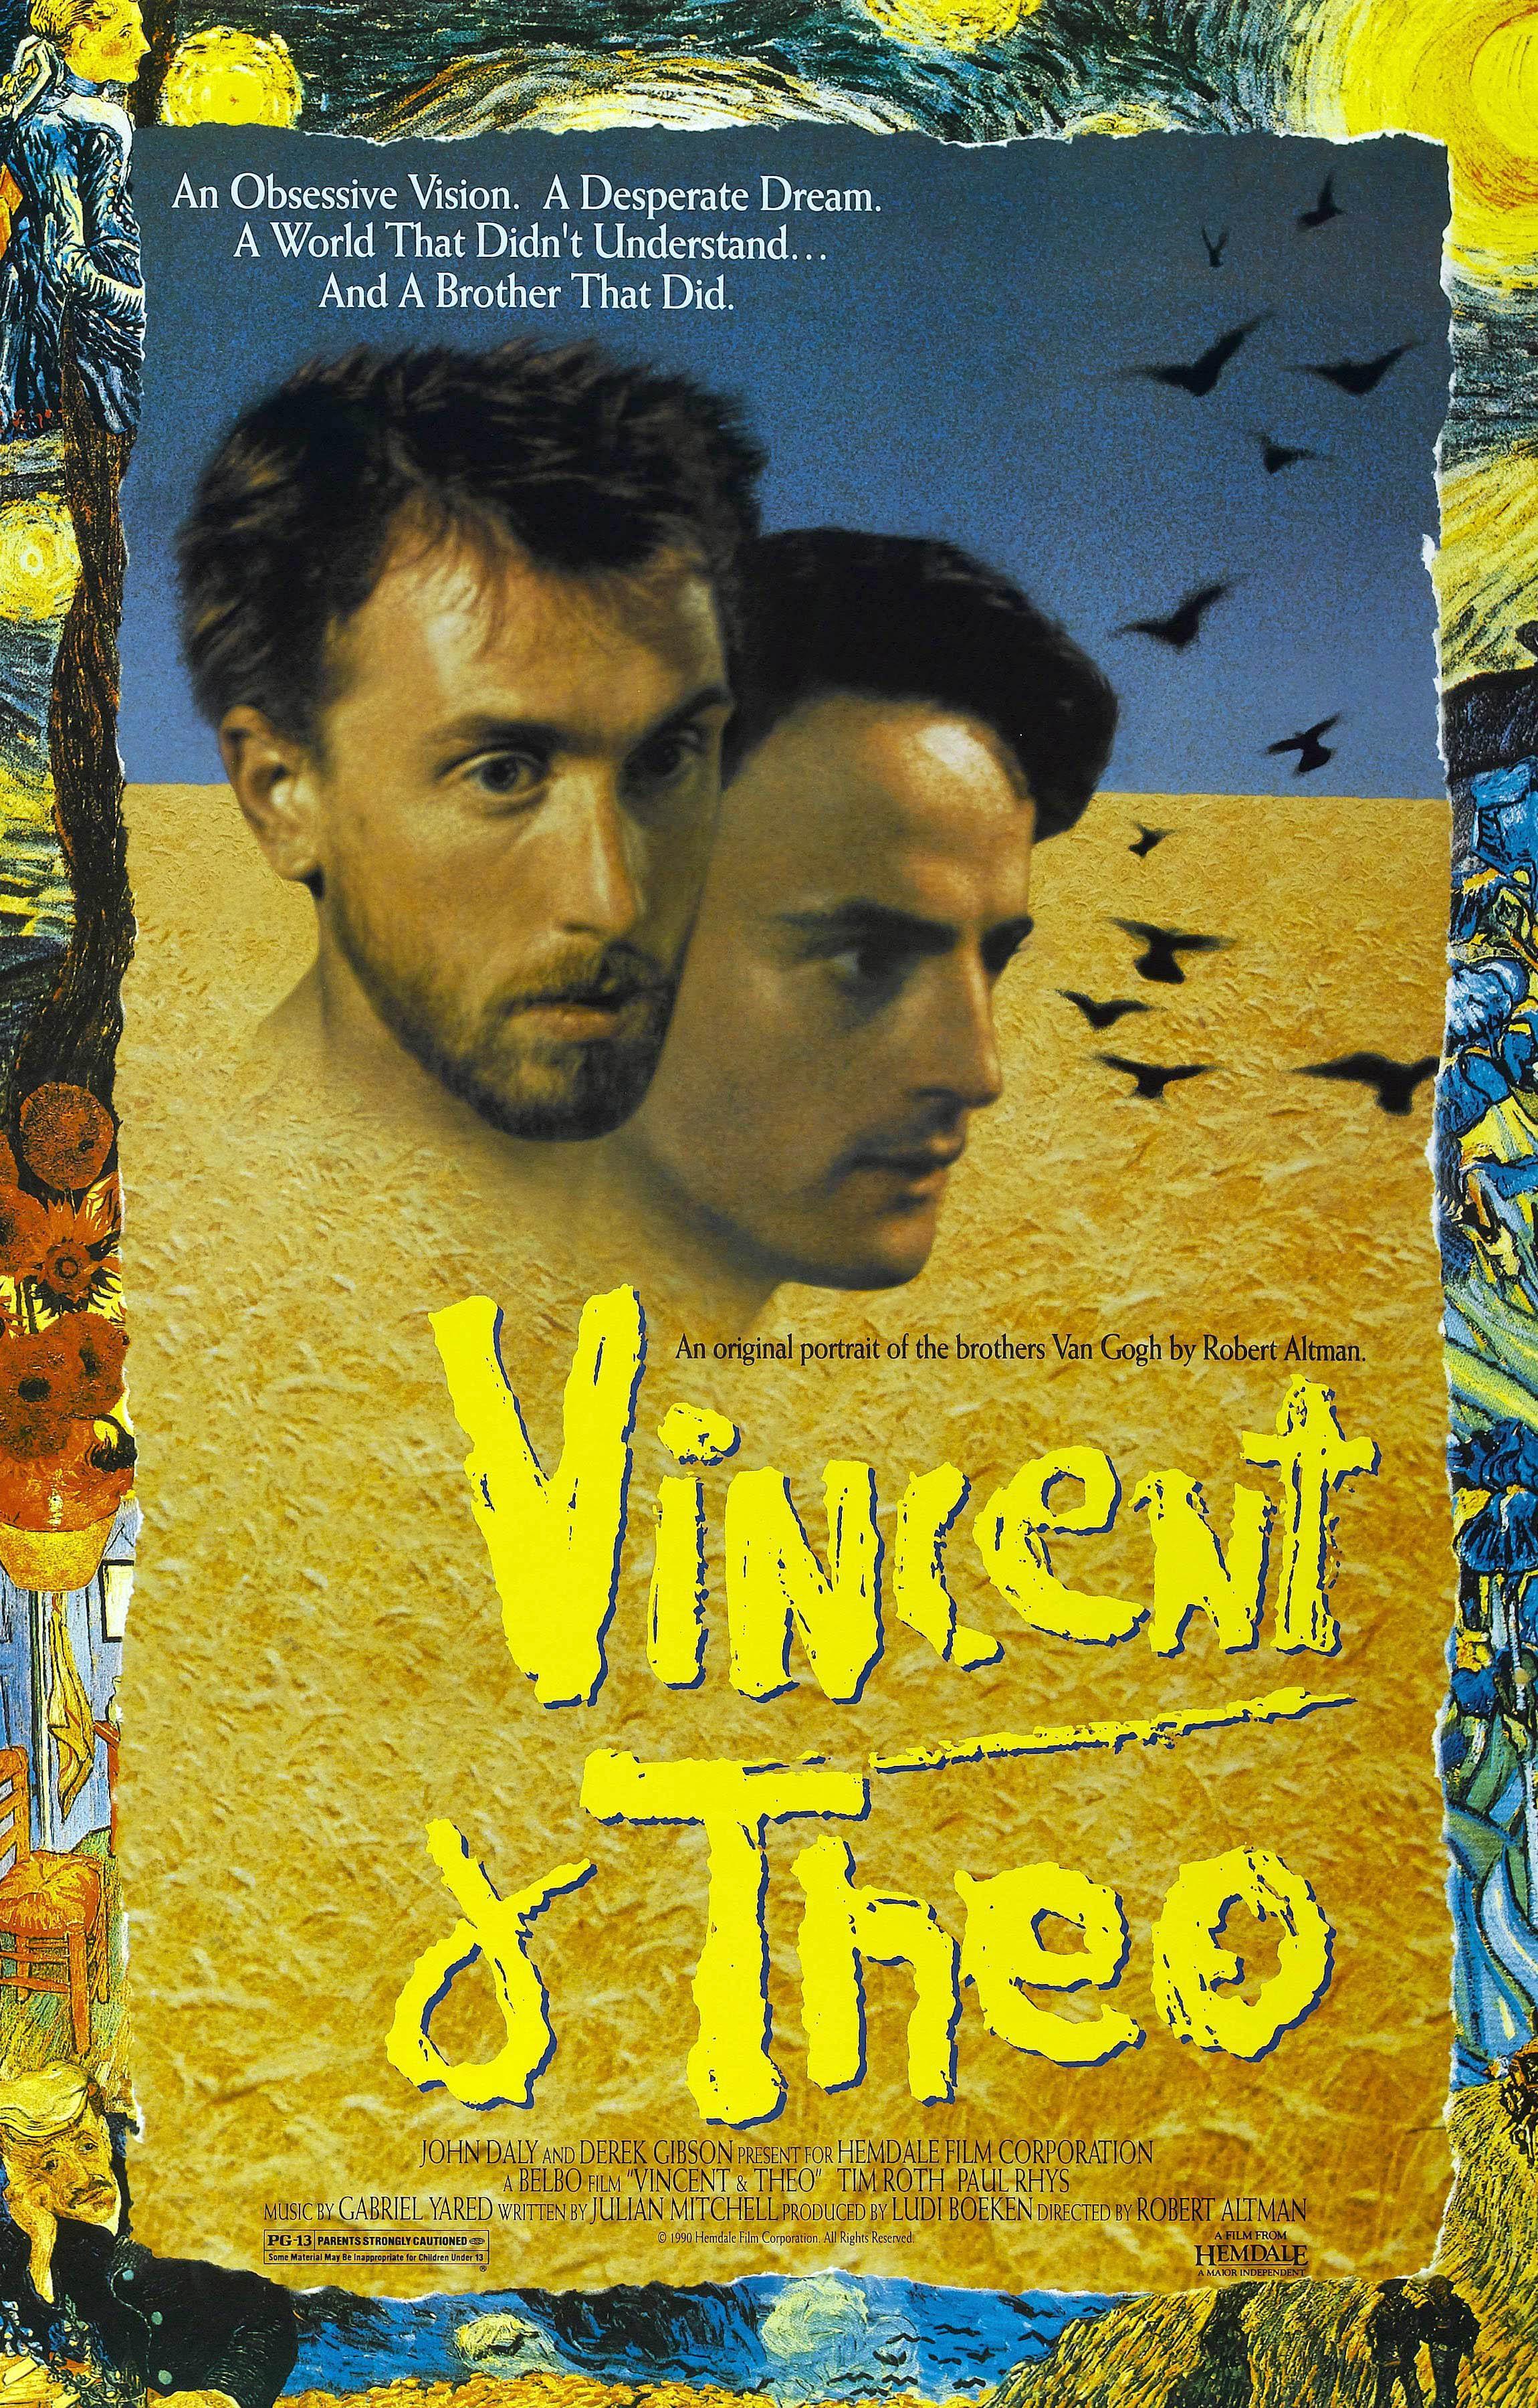 Постер фильма Винсент и Тео | Vincent & Theo